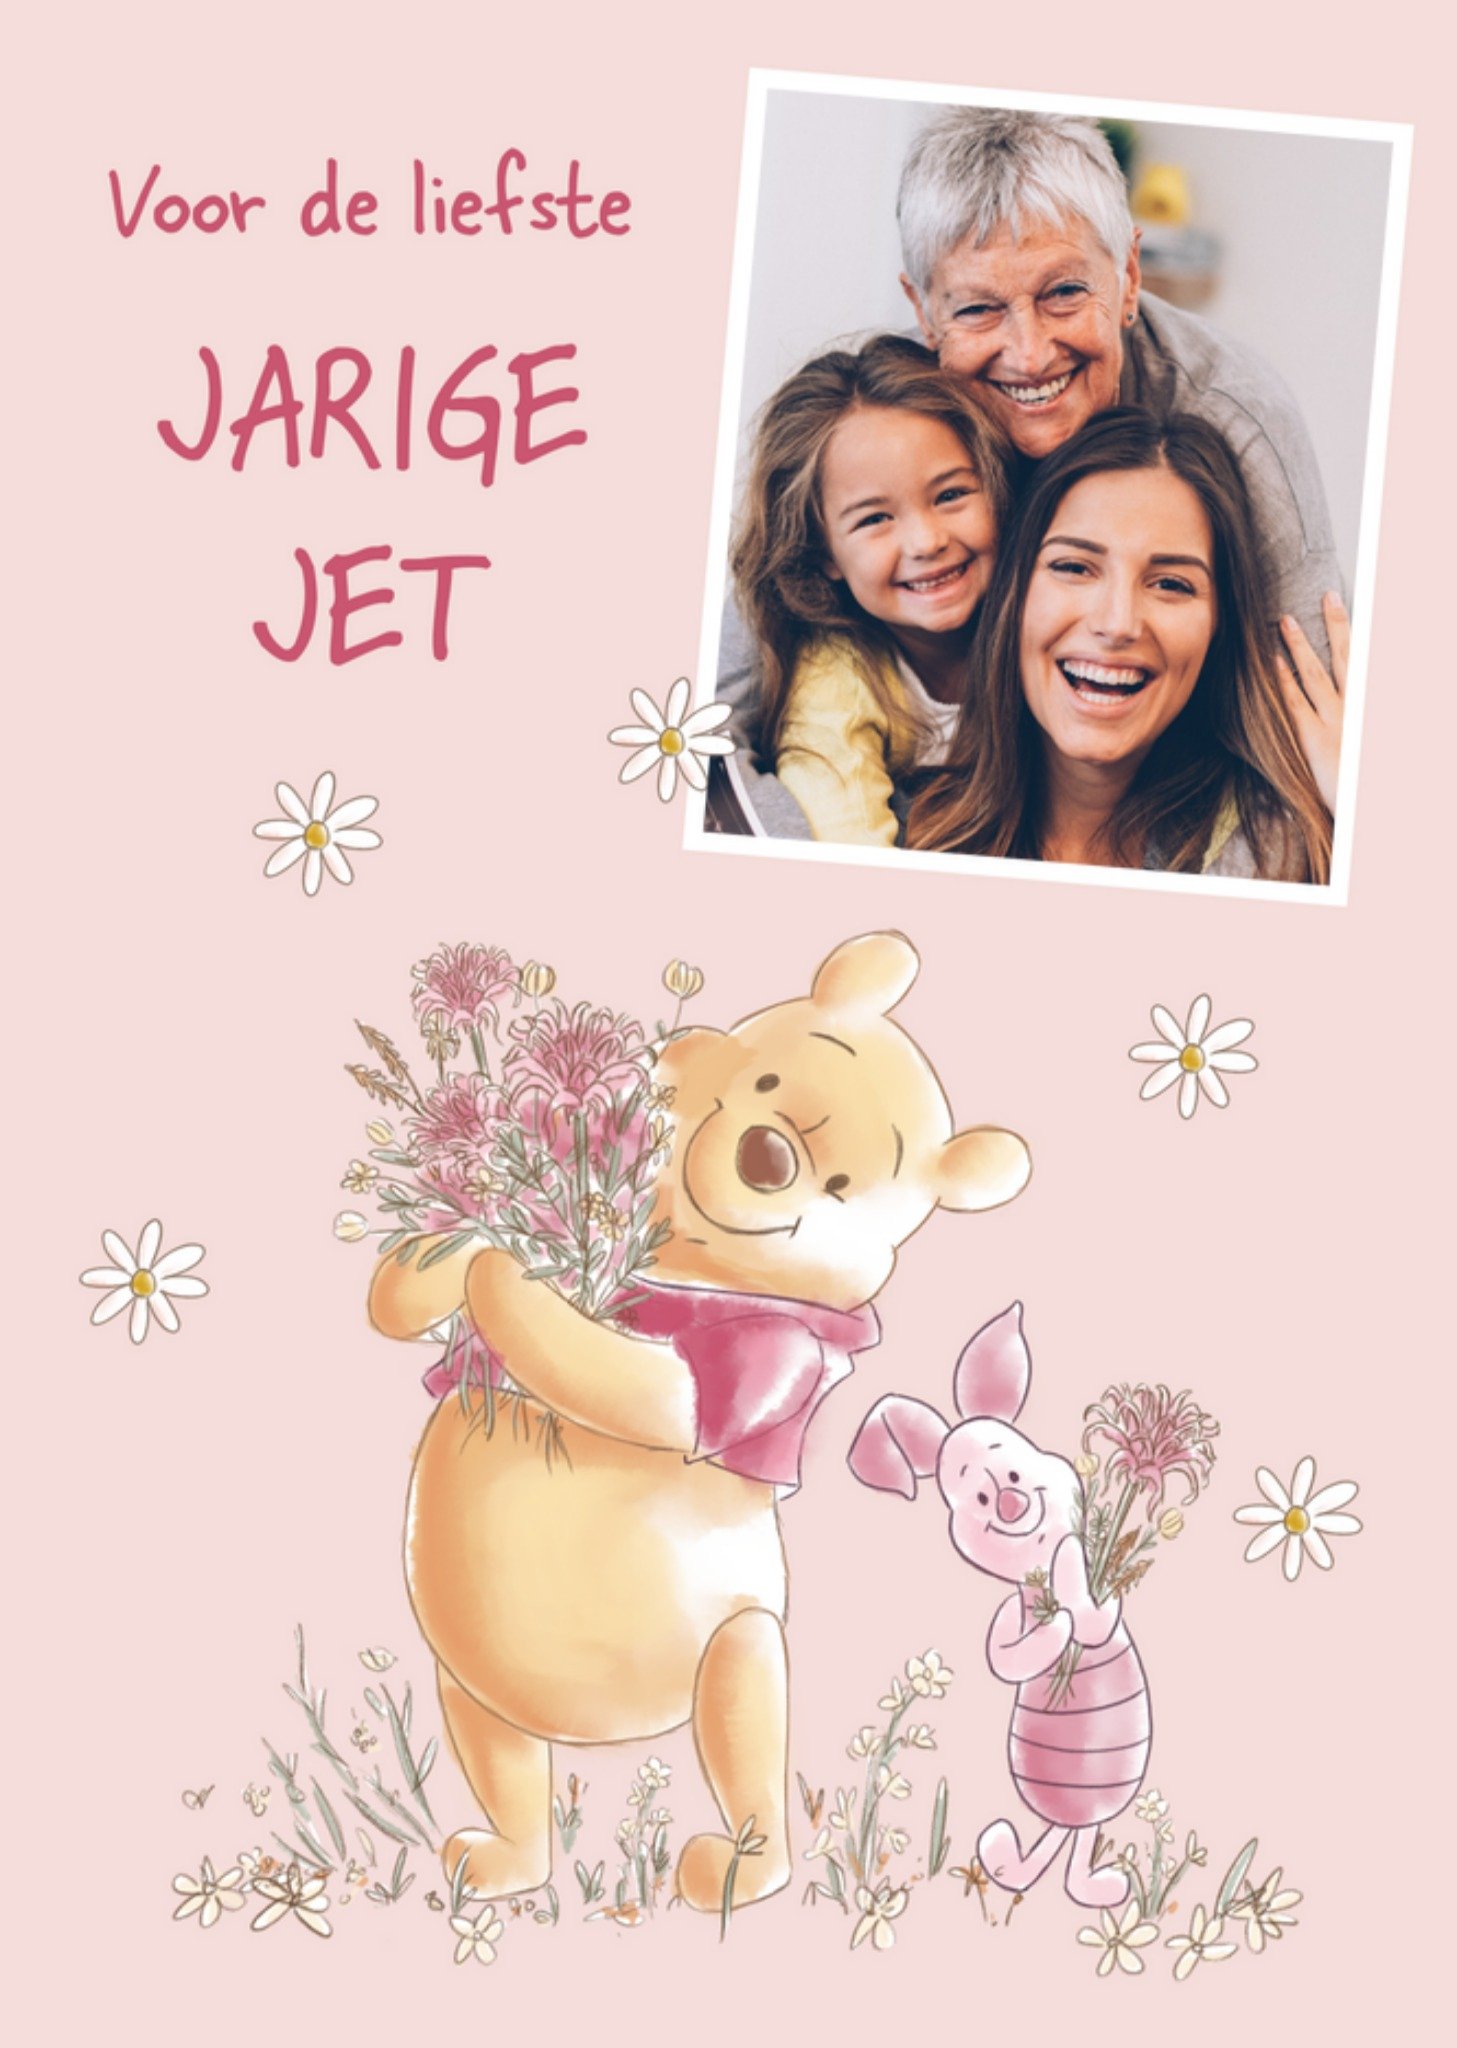 Disney - Verjaardagskaart - Winnie the Pooh - Met foto - Jarige Jet